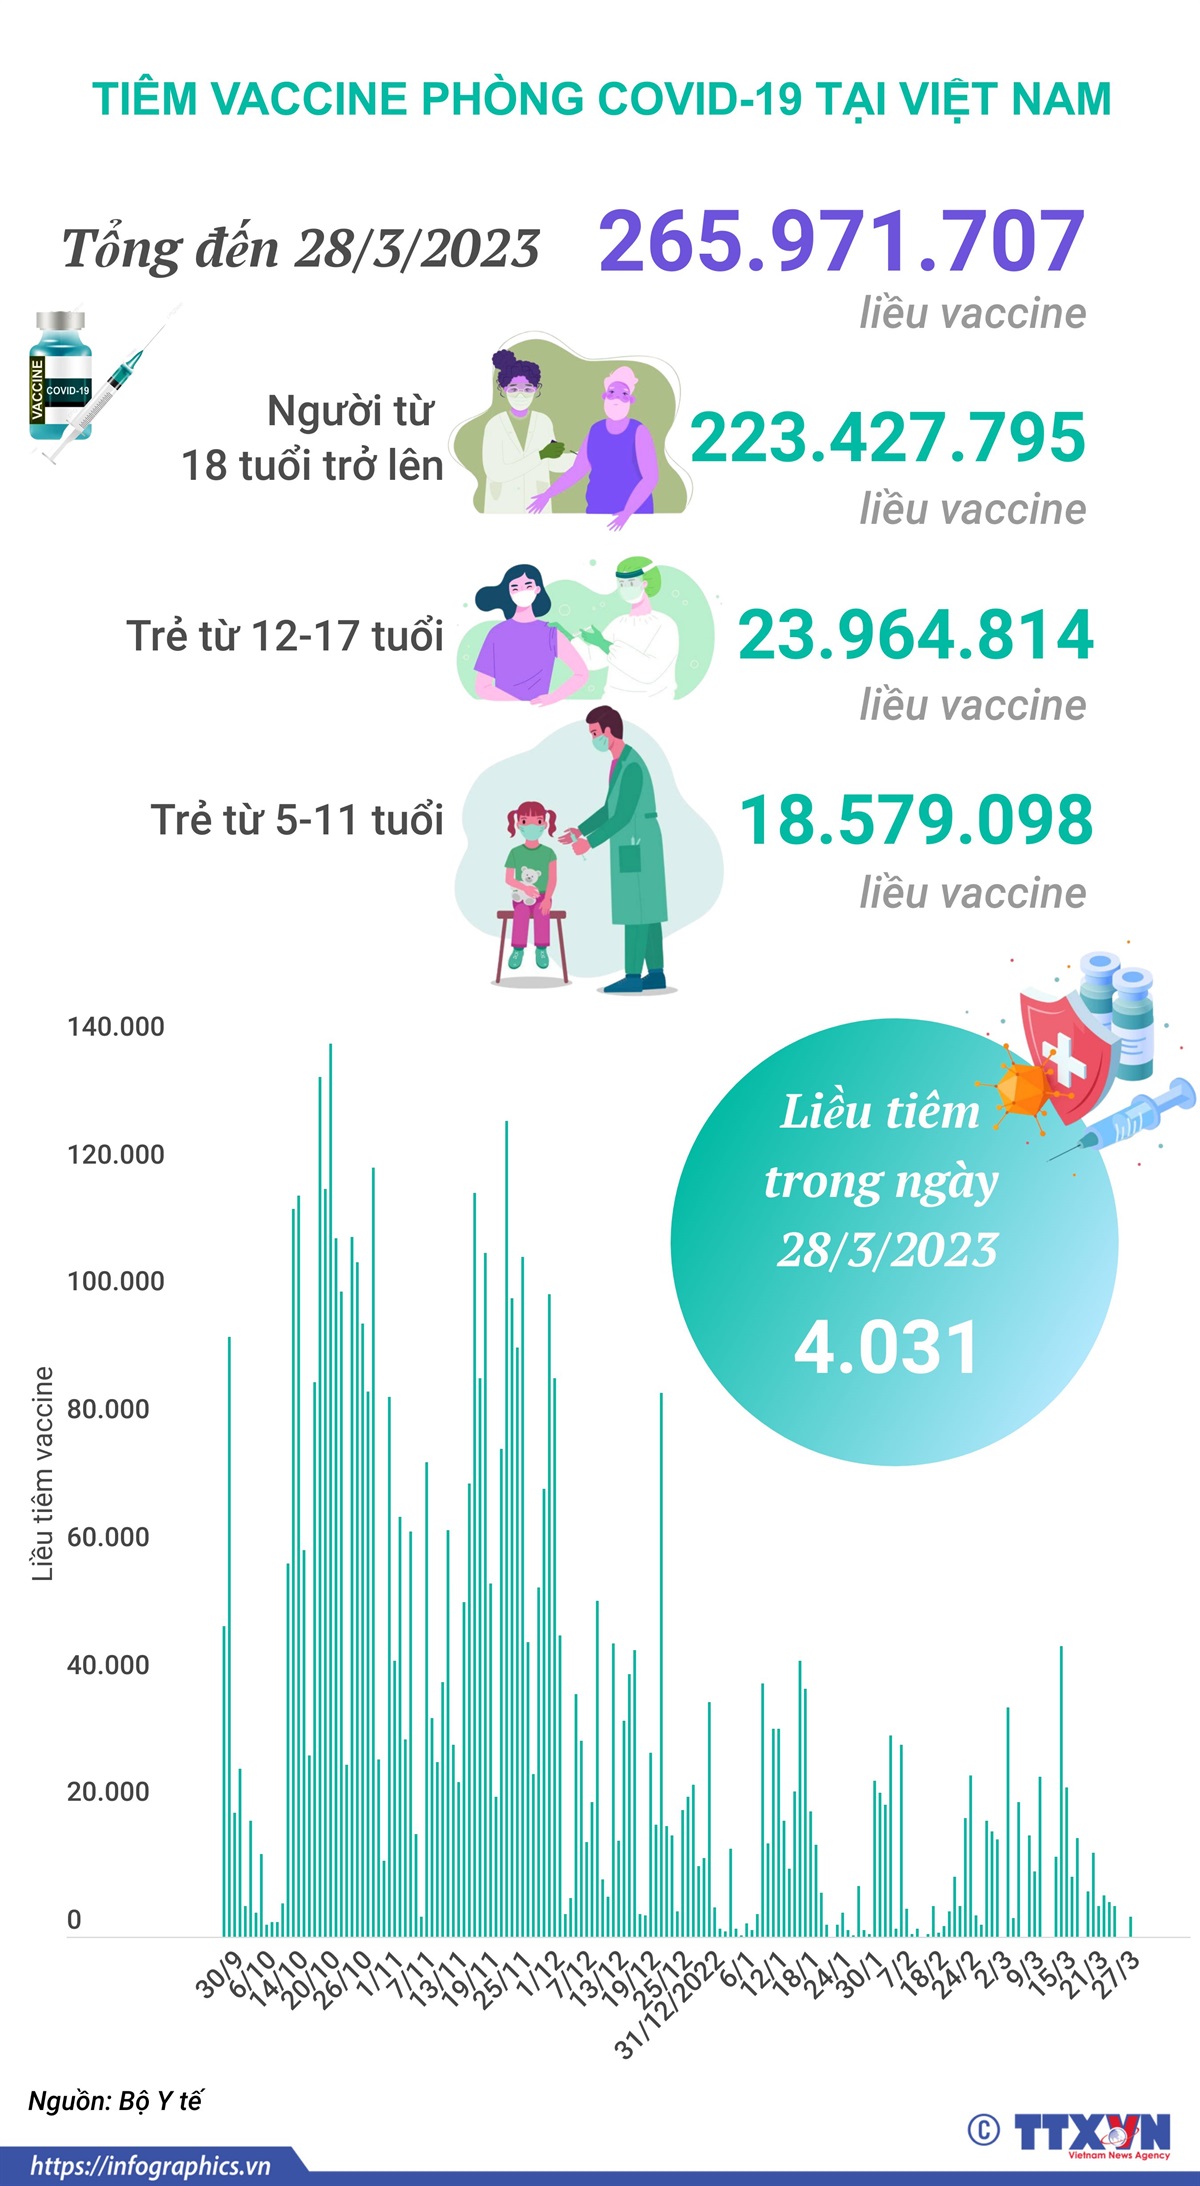 vna potal tinh hinh tiem vaccine phong covid 19 tai viet nam tinh den het ngay 2832023 191211749